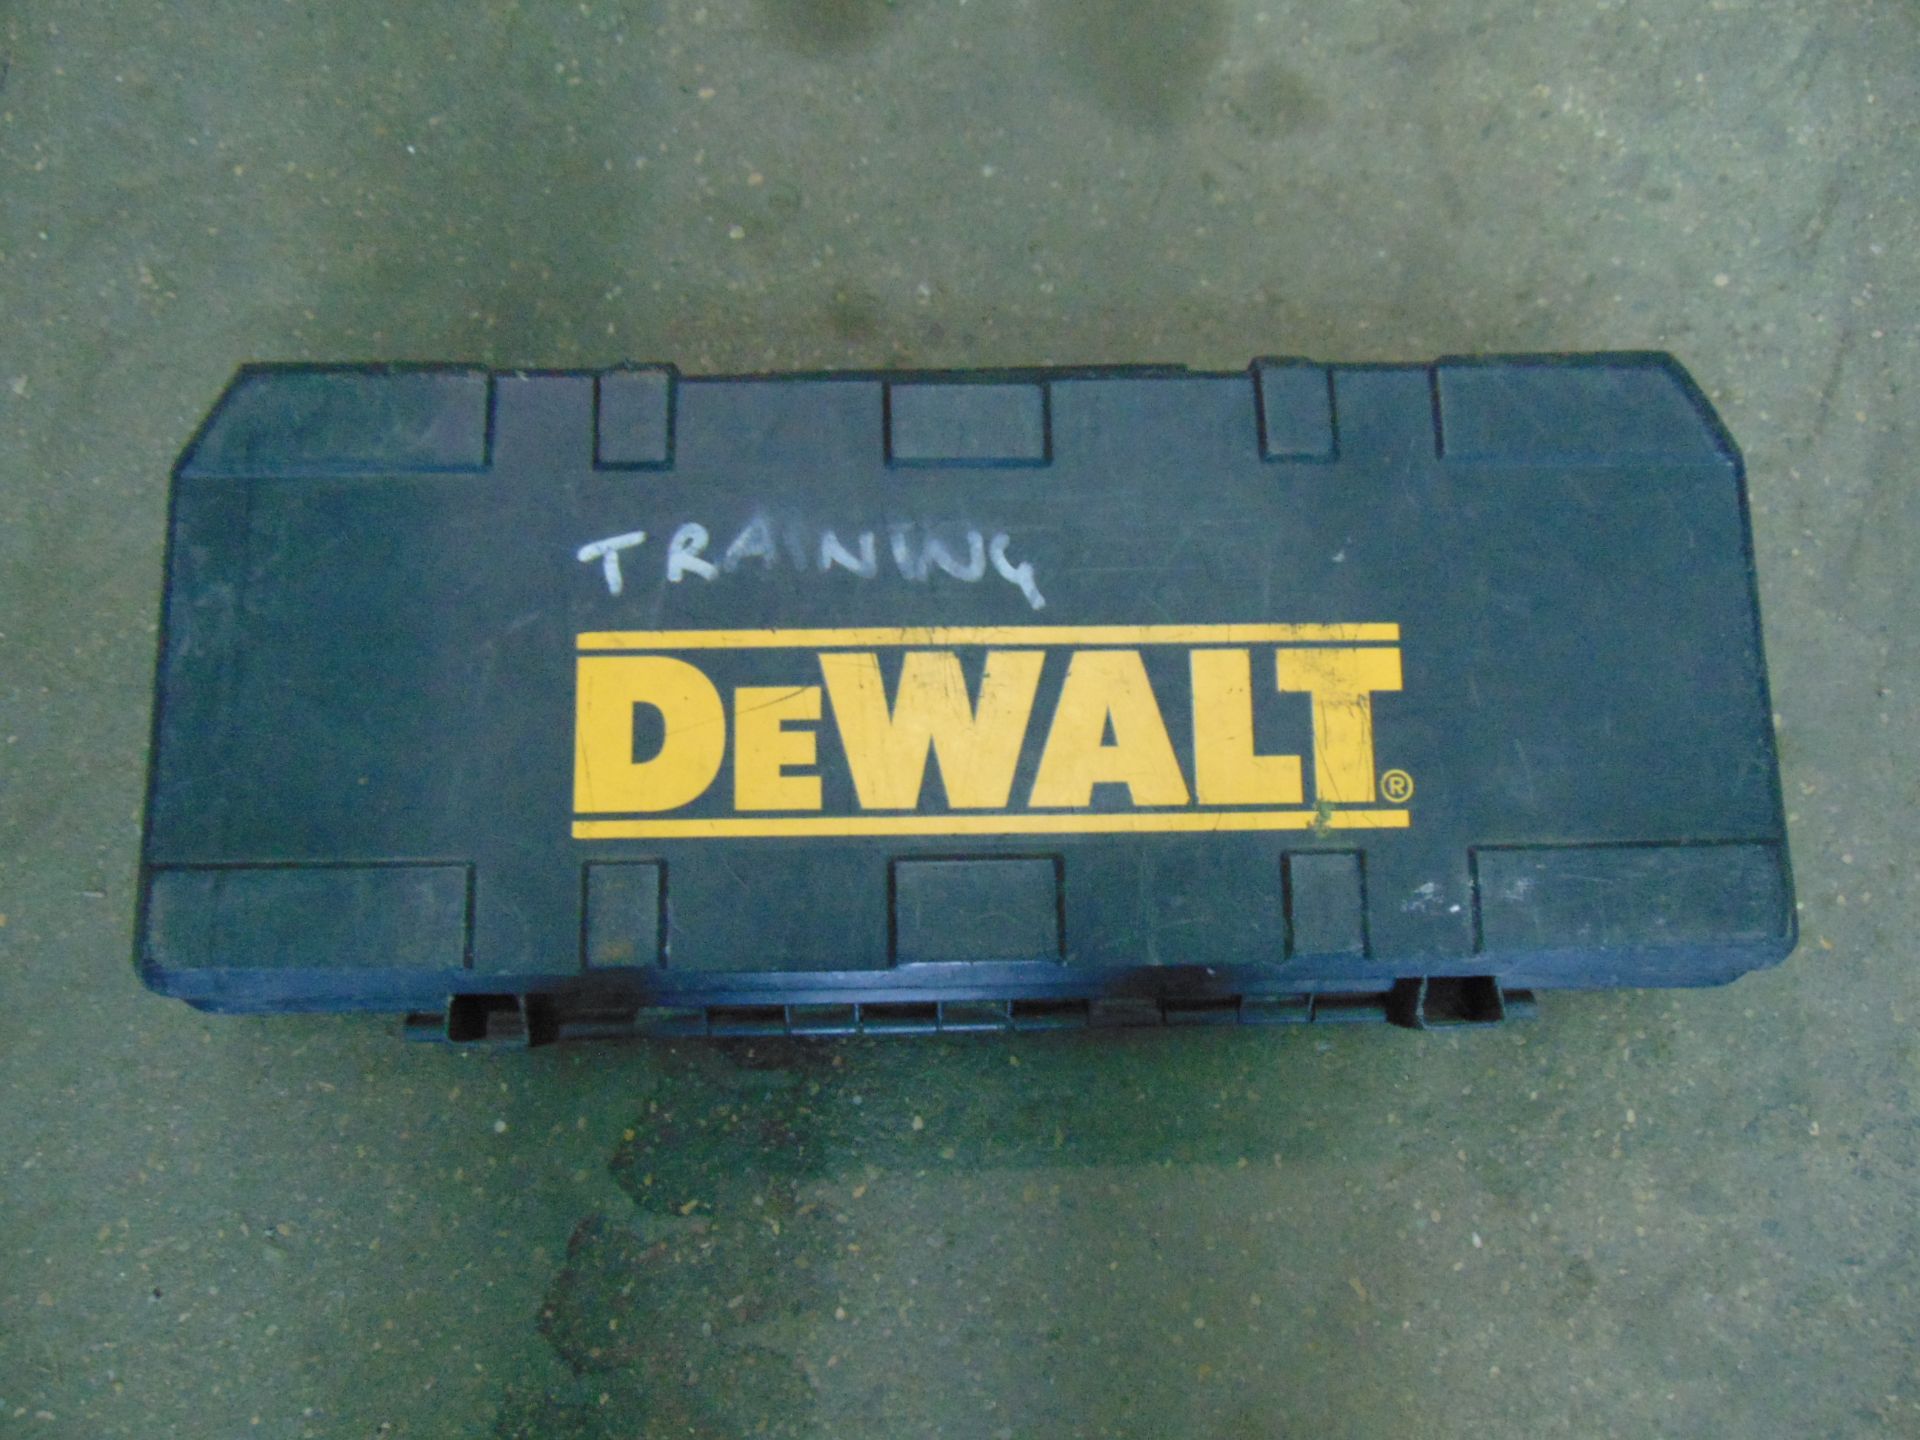 Dewalt DW938 Reciprocating Saw - Image 5 of 5